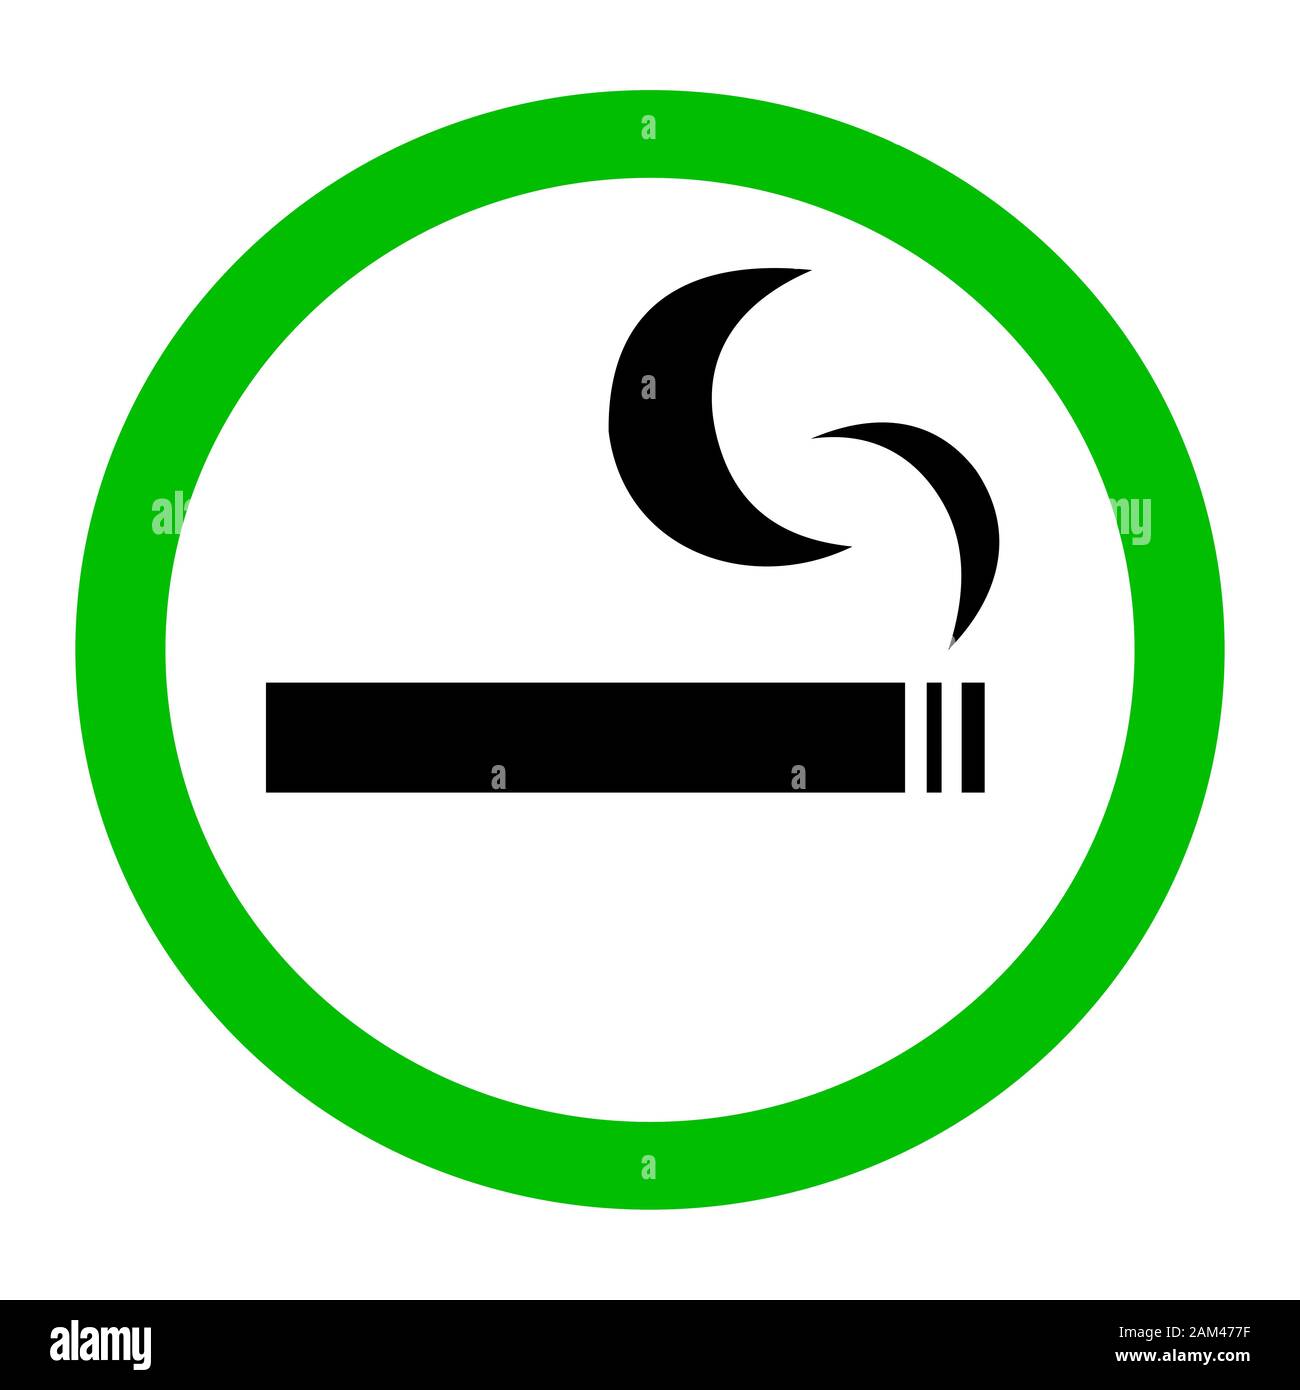 Smoking area sign Stock Photo